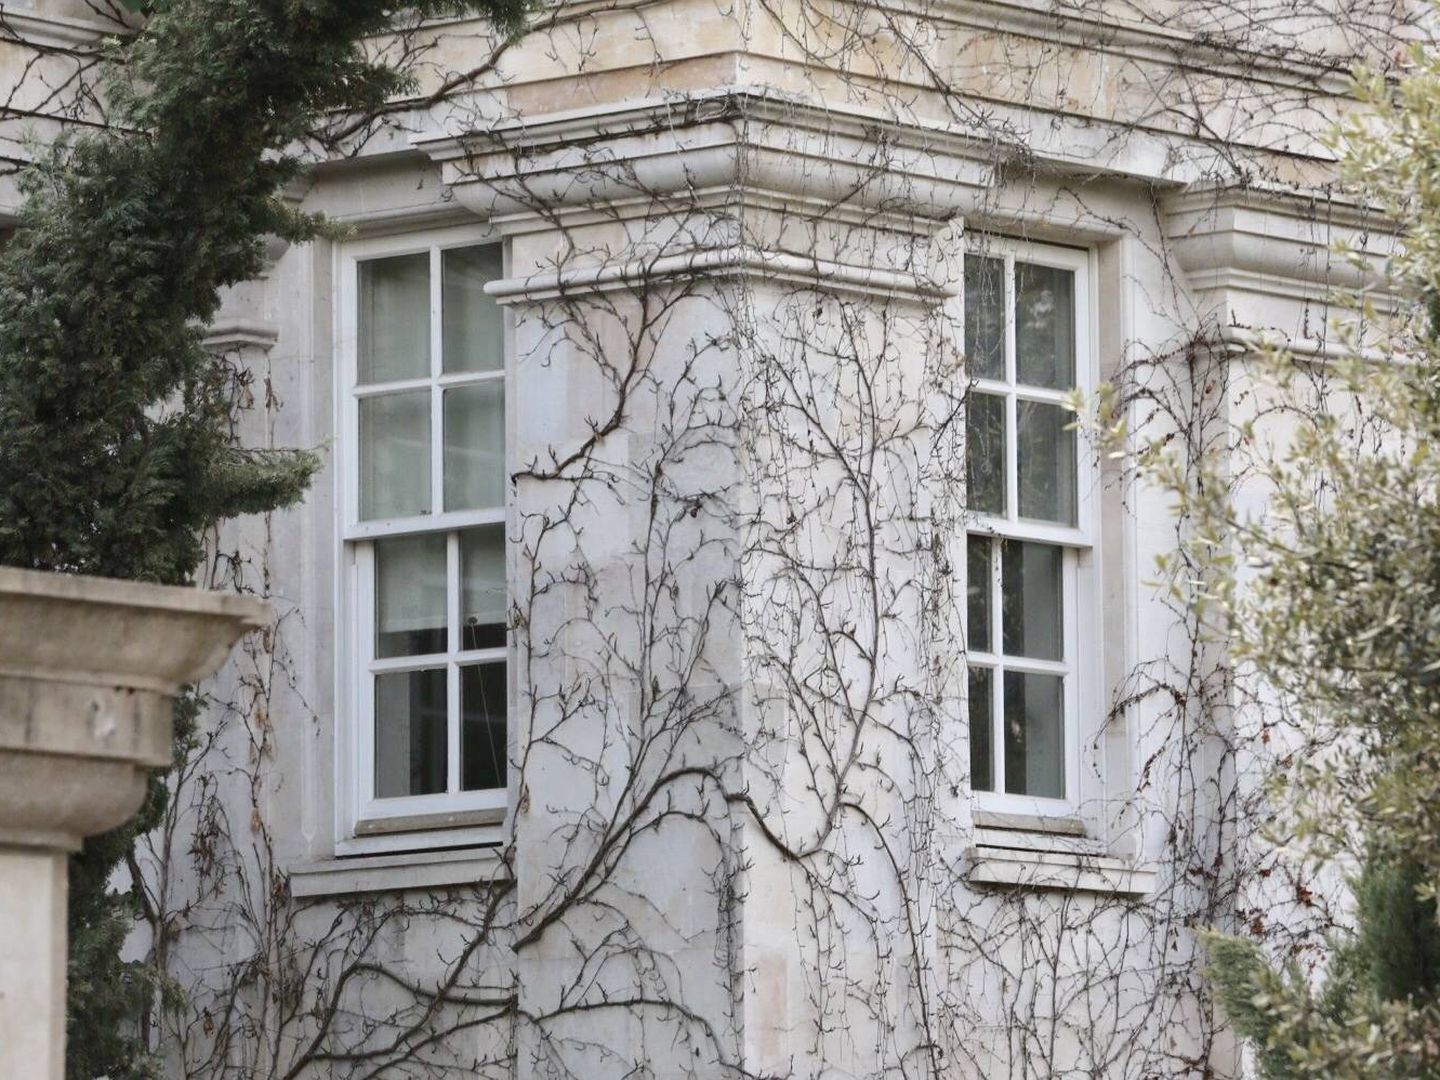 La vegetación cubre parte de la fachada de la casa. (J. Martín)